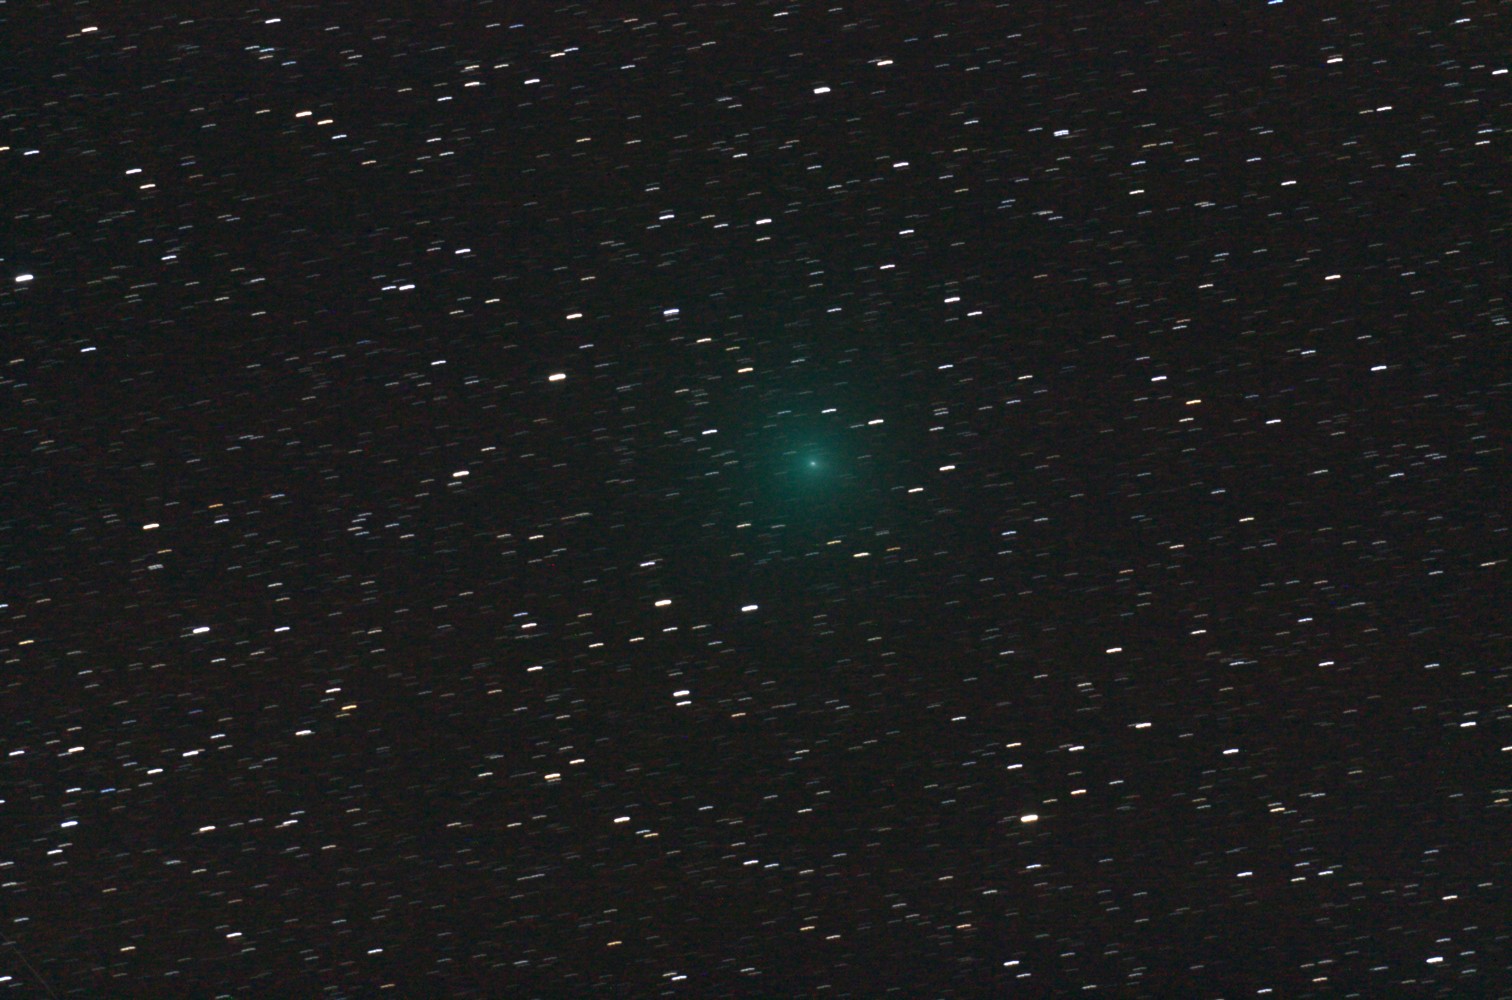 Komet Linear 252P